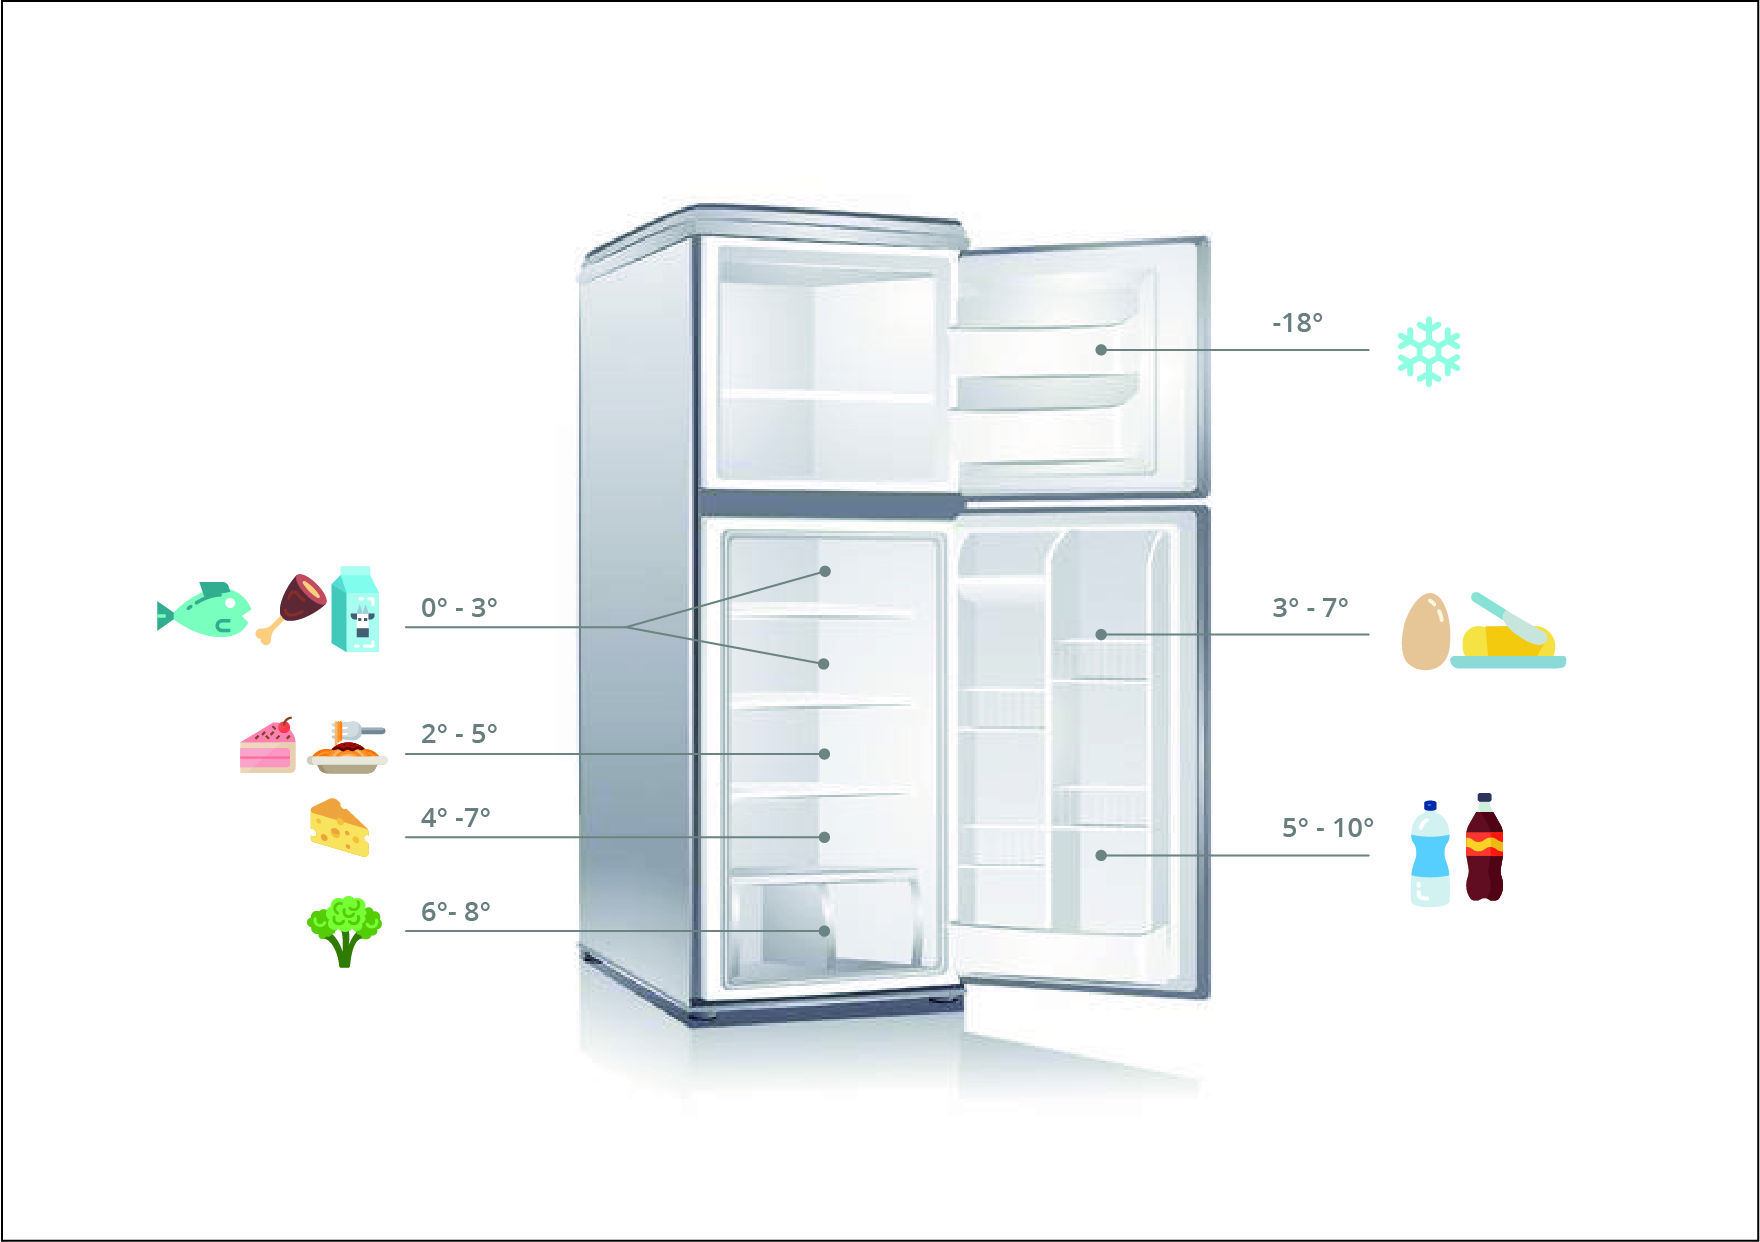 Comment entretenir et désinfecter son réfrigérateur ?